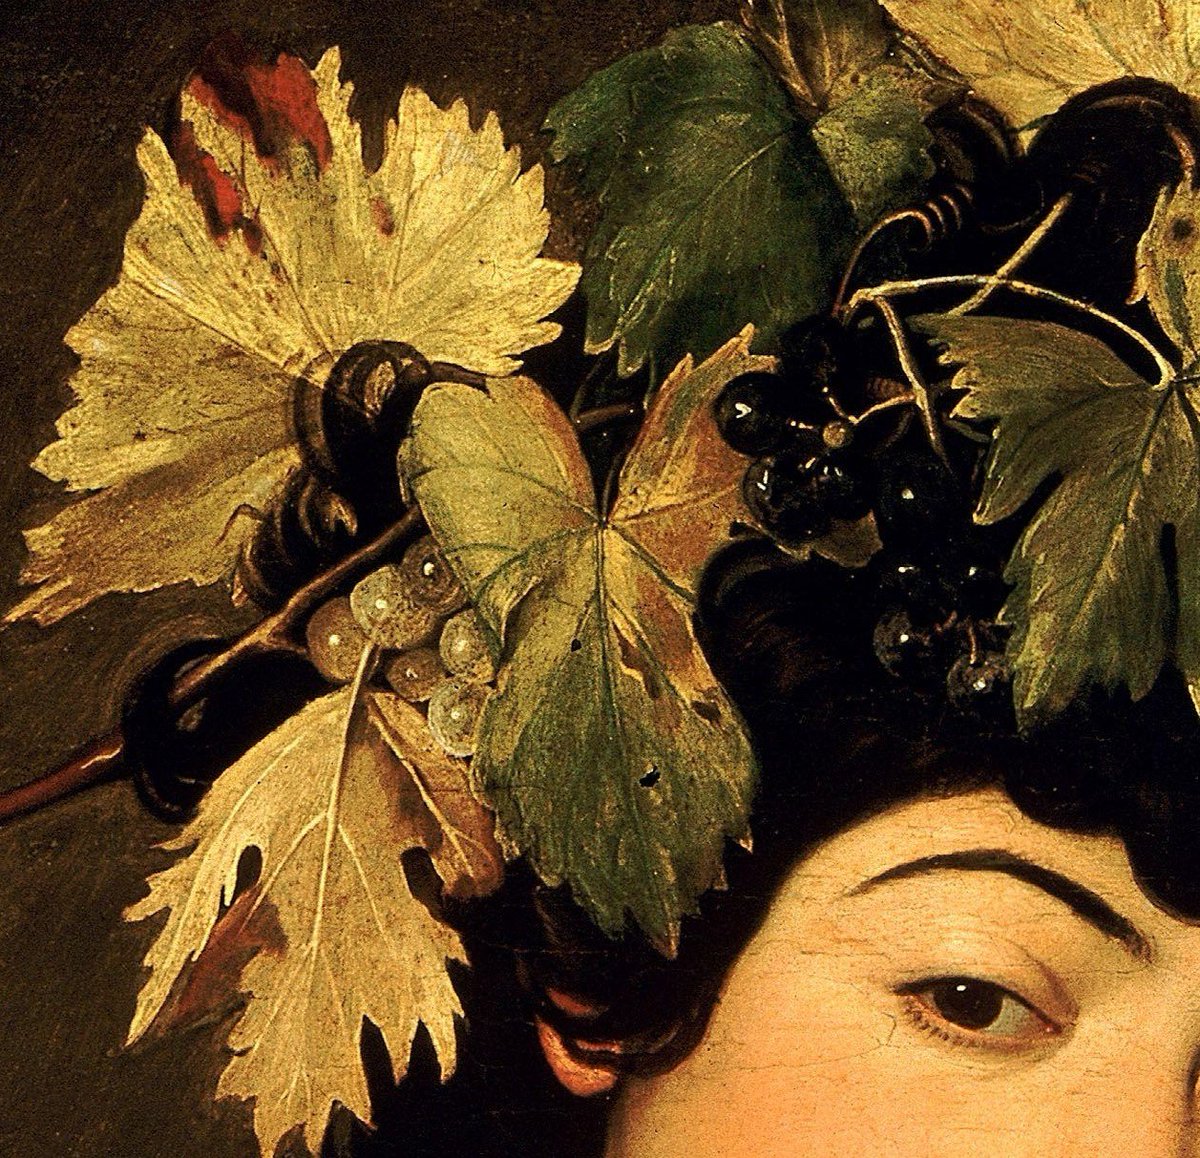 Caravaggio - The Adolescent Bacchus, Detail.